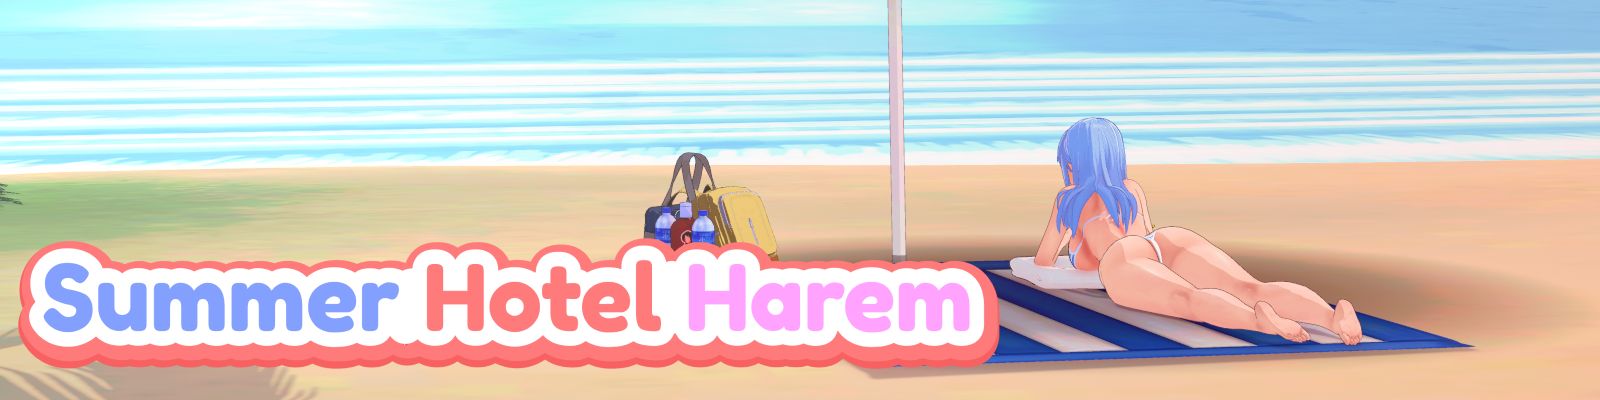 Summer Hotel Harem Apk Android Adult Game Download (11)